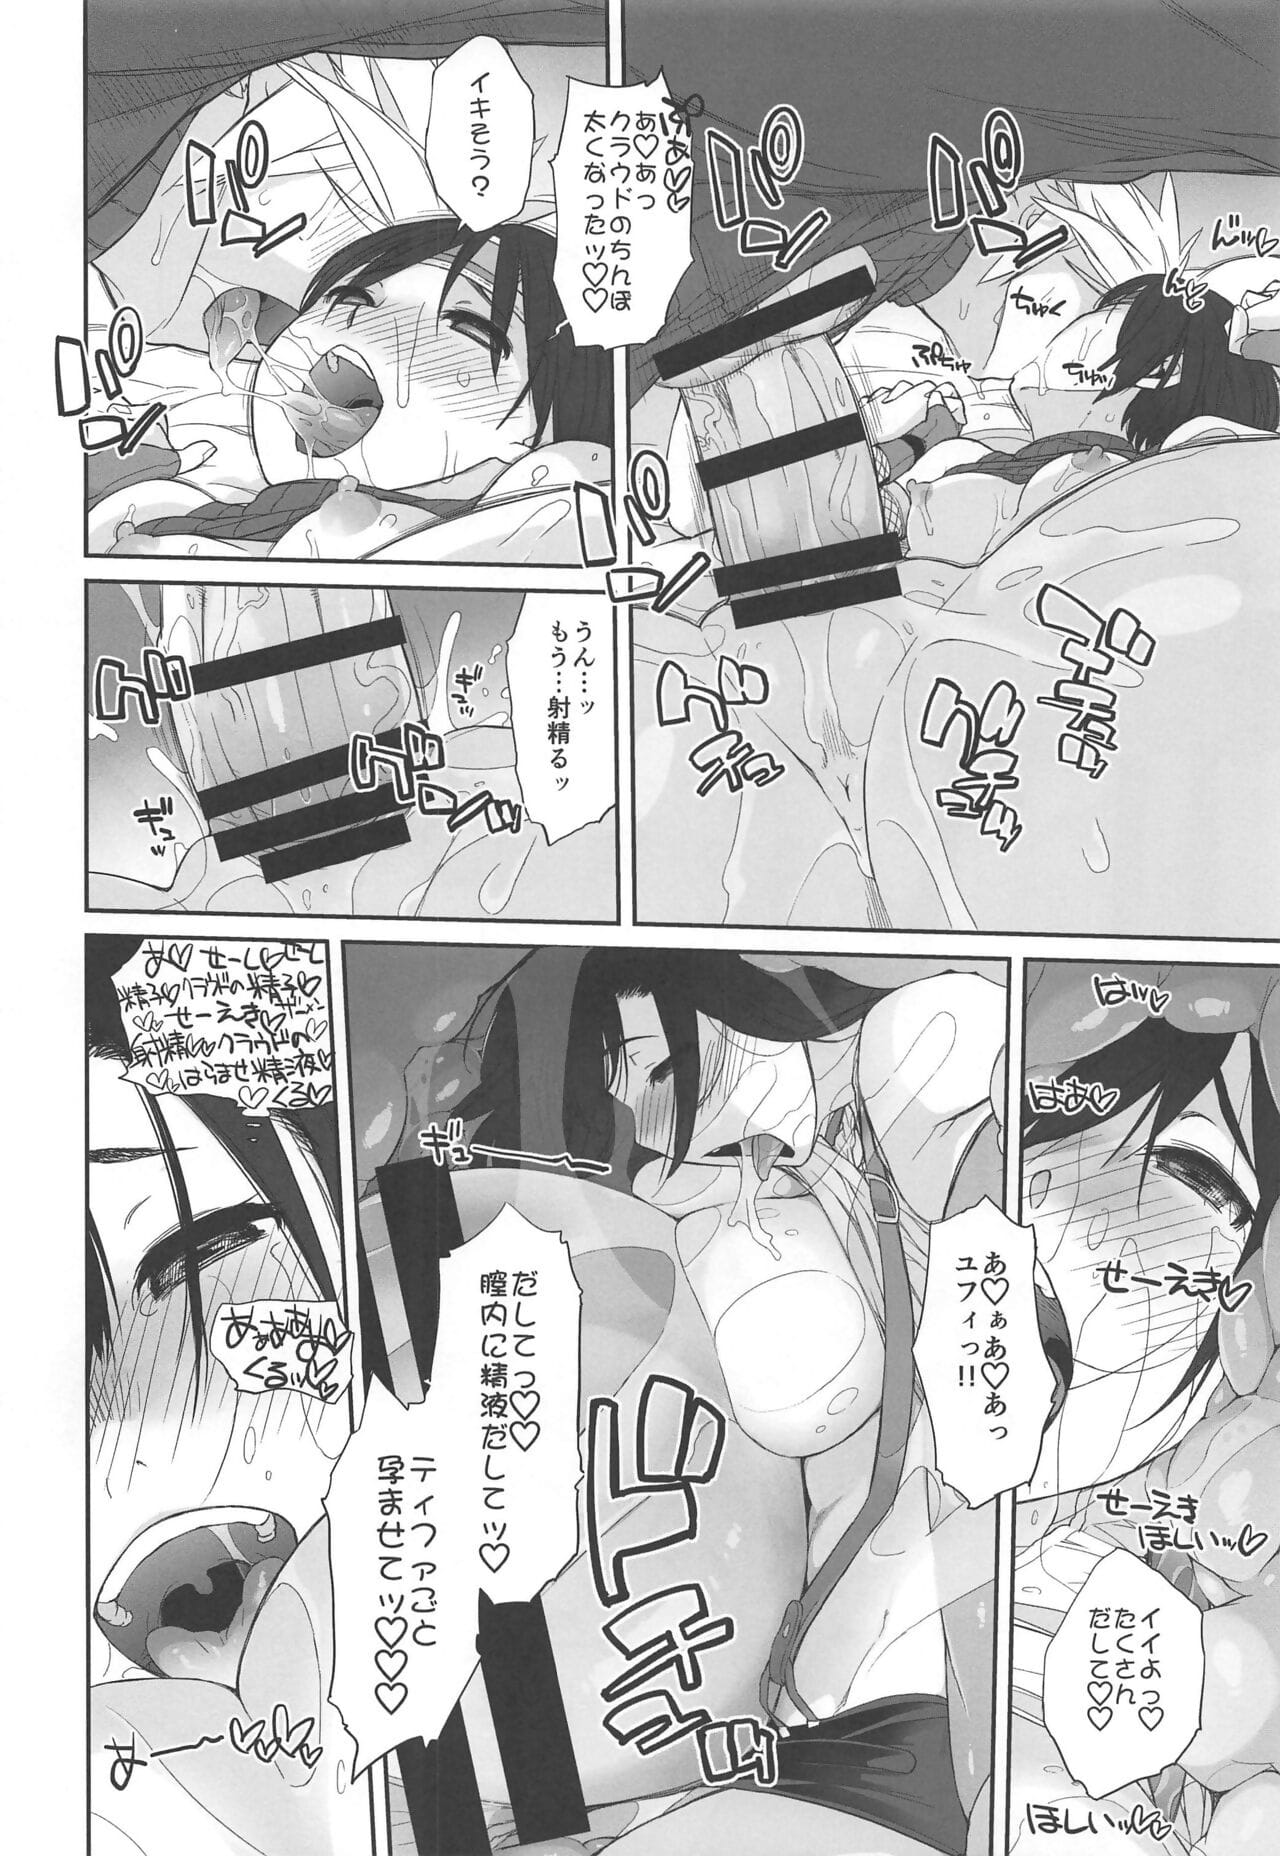 マテリア X 女の子 #2 tifa no 最小 daisakusen! page 1